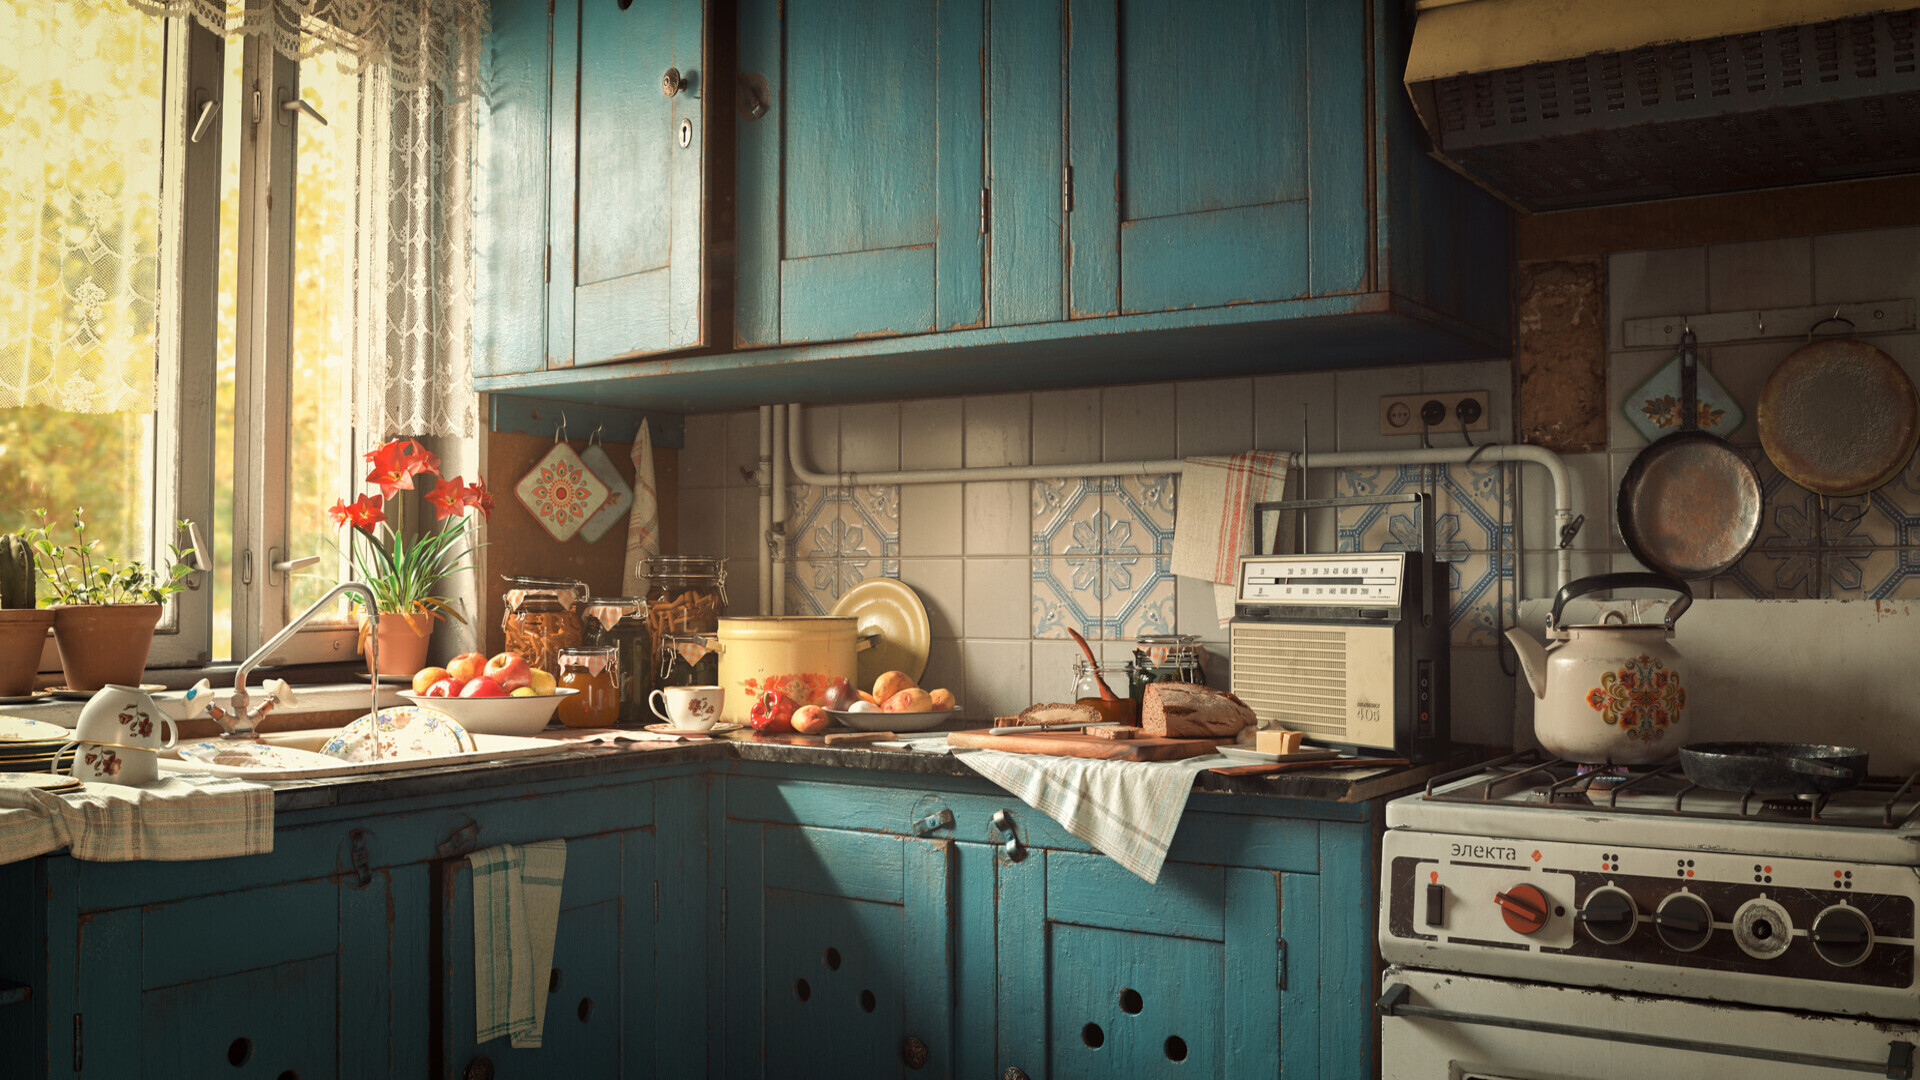 Granny's Kitchen by Alex Jerjomin